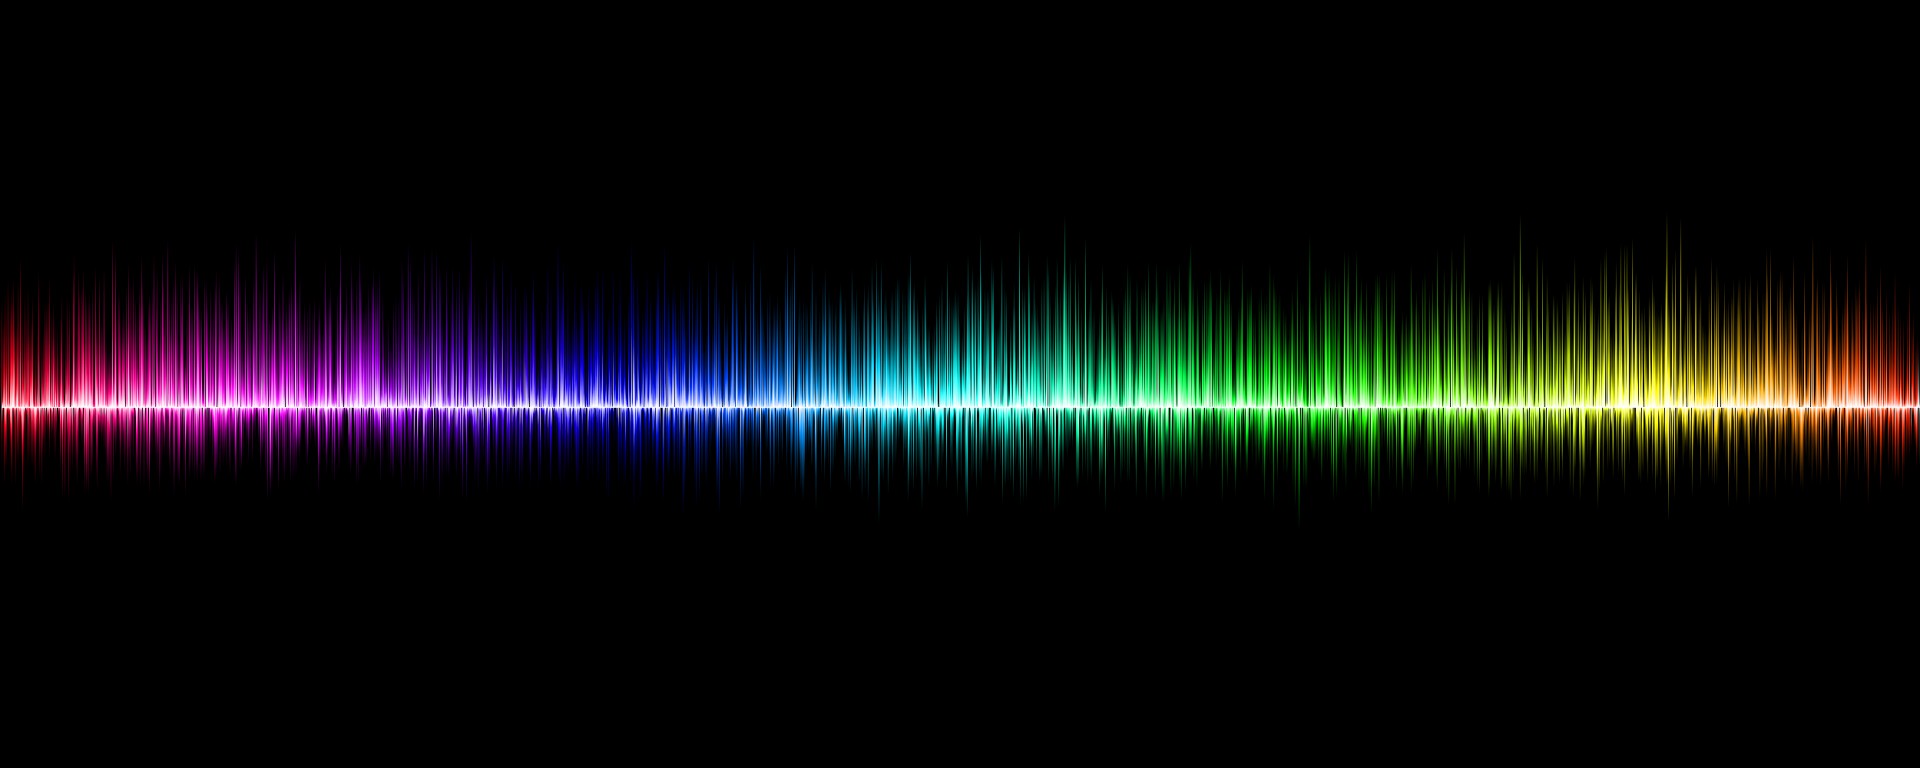 声波和可见光谱图形